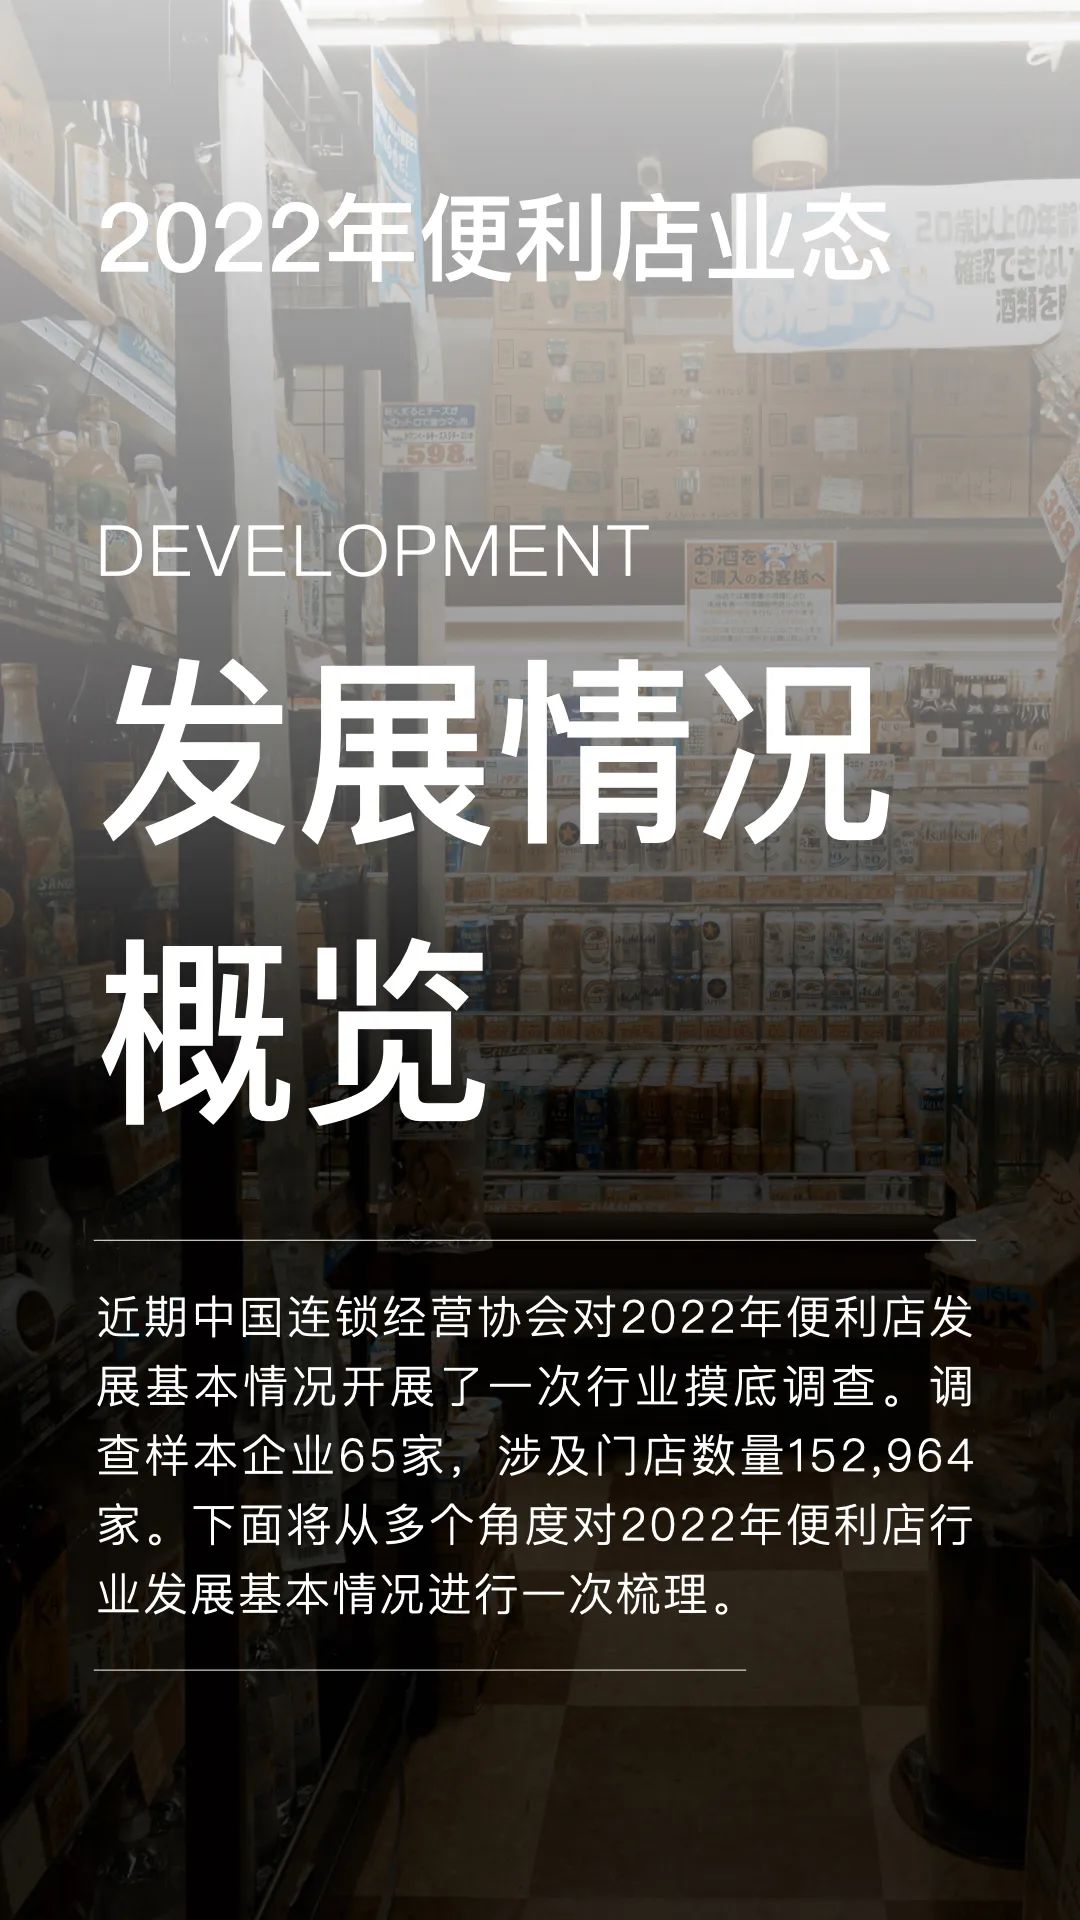 2022年中国便利店发展情况1.jpg